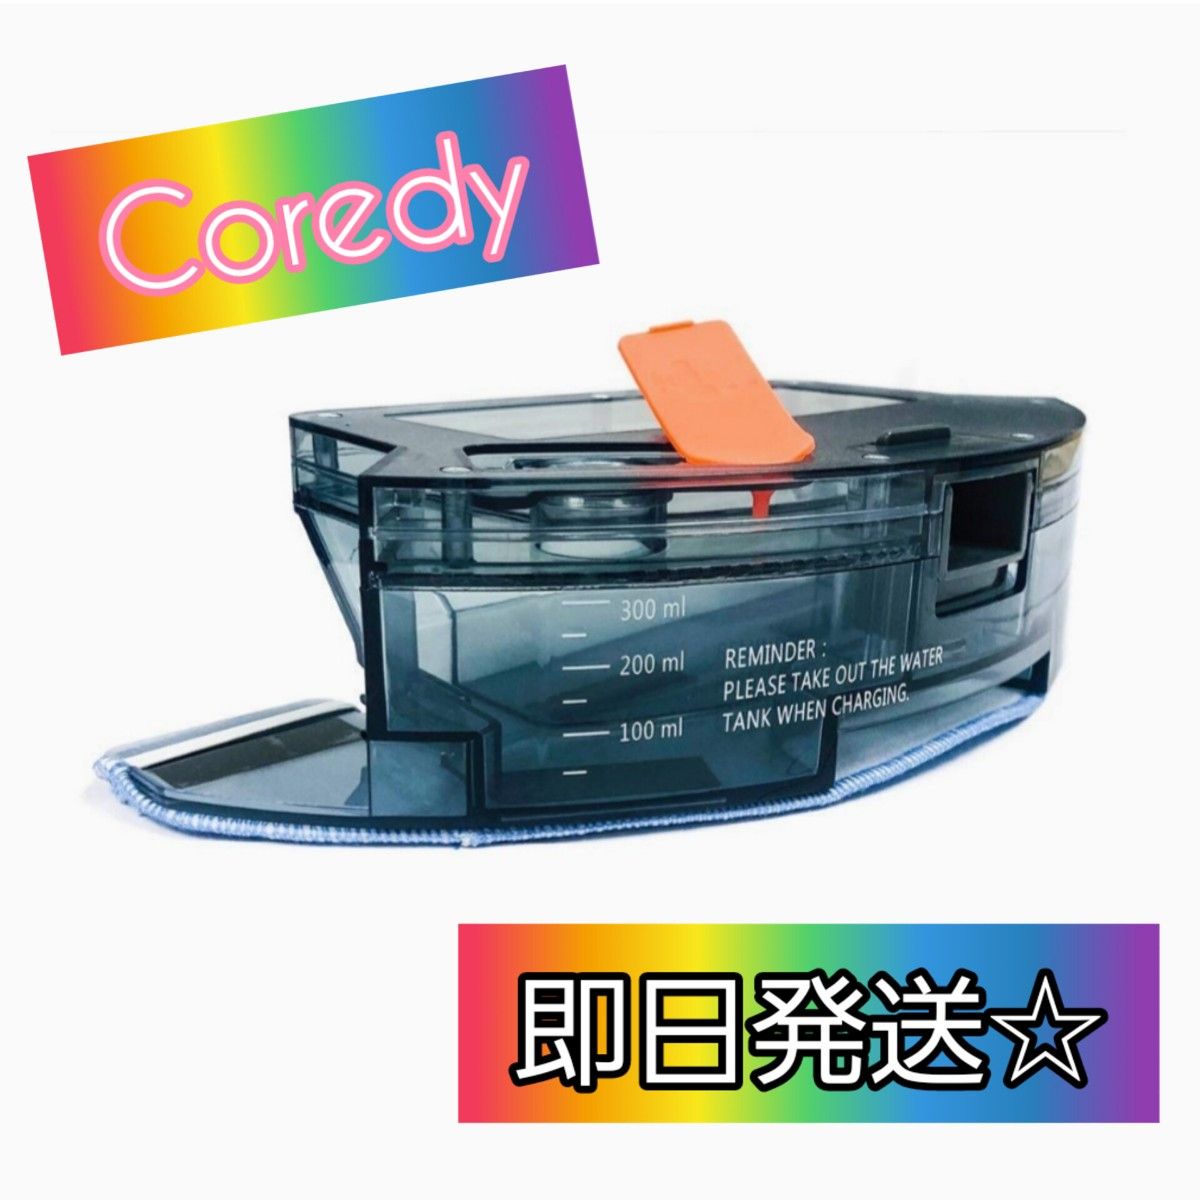 【半額以下！】☆Coredy ロボット掃除機交換用水タンク 布モップ付き☆